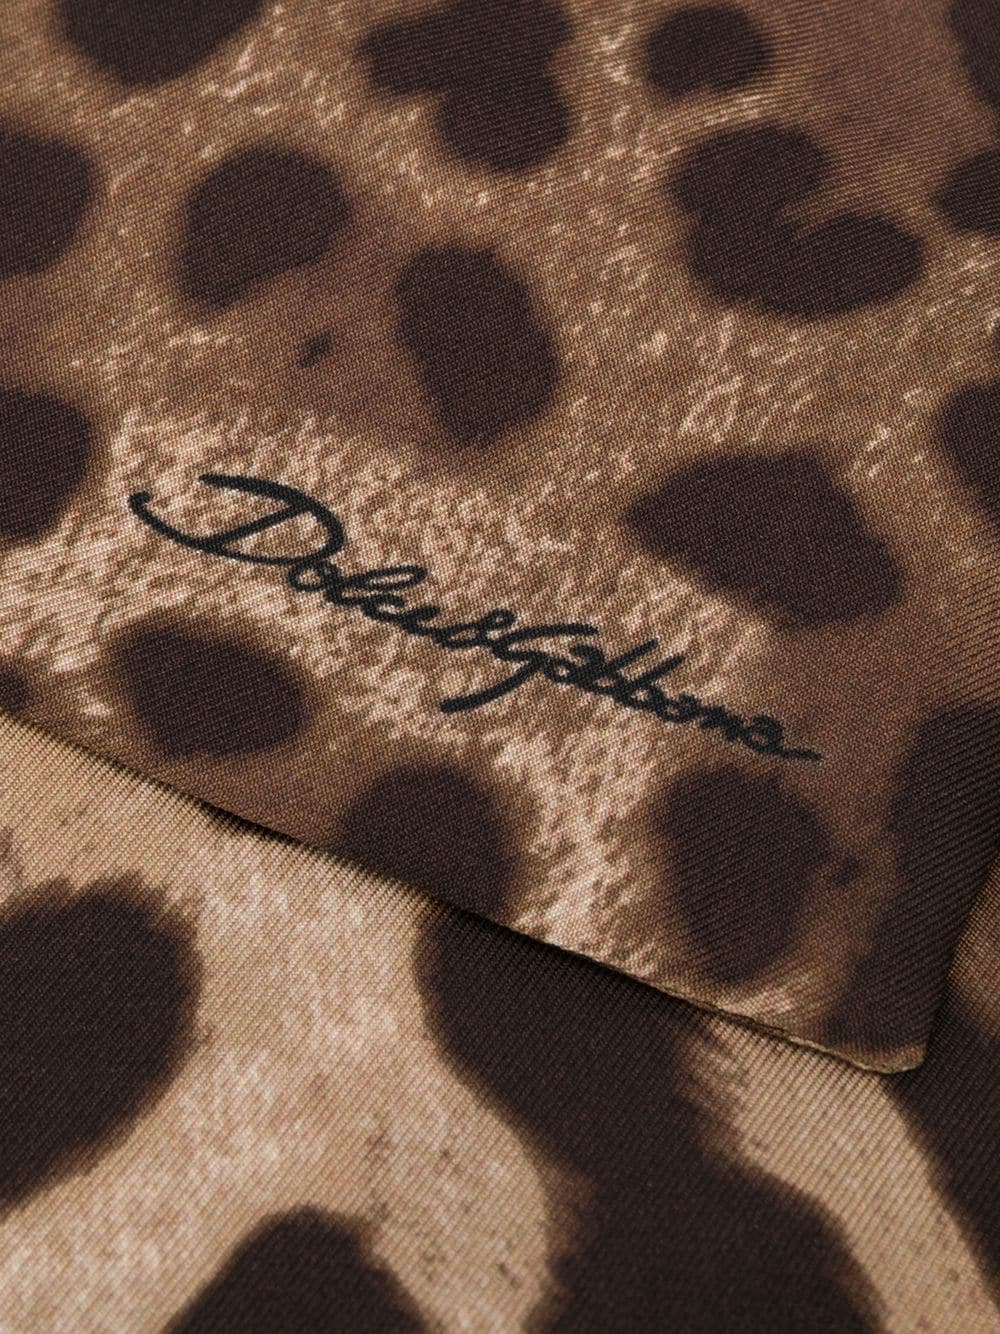 фото Dolce & gabbana шарф с леопардовым принтом